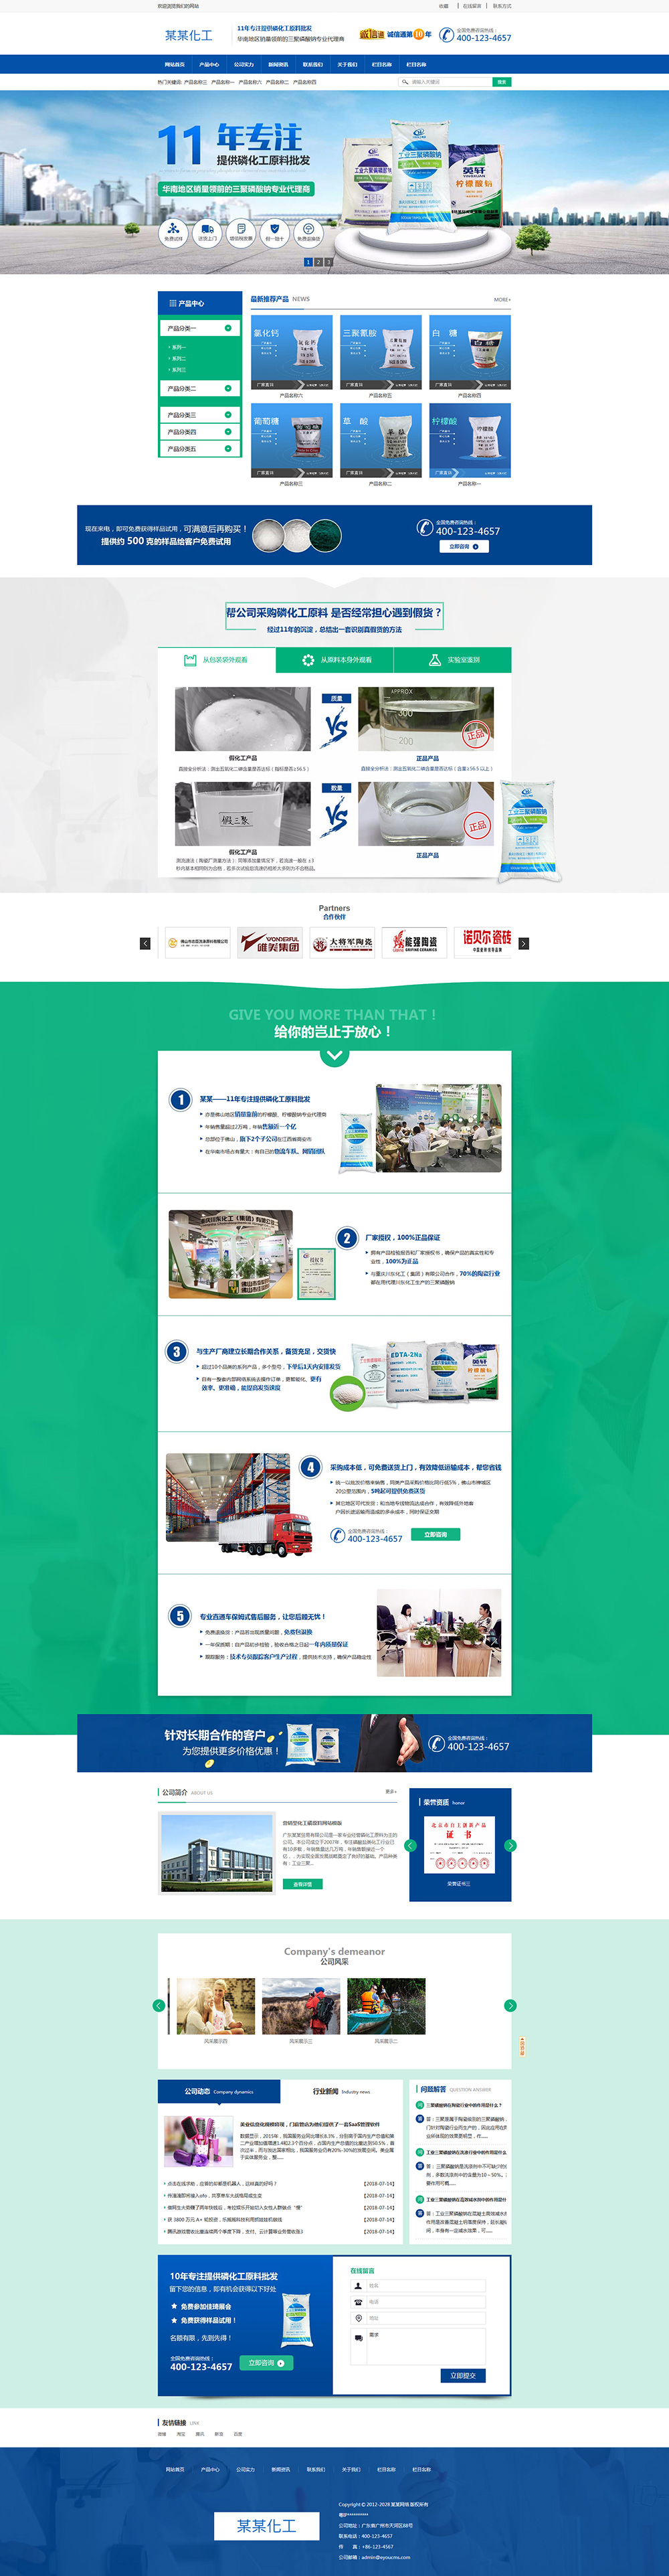 营销型化工磷原料企业建站网站模板1760